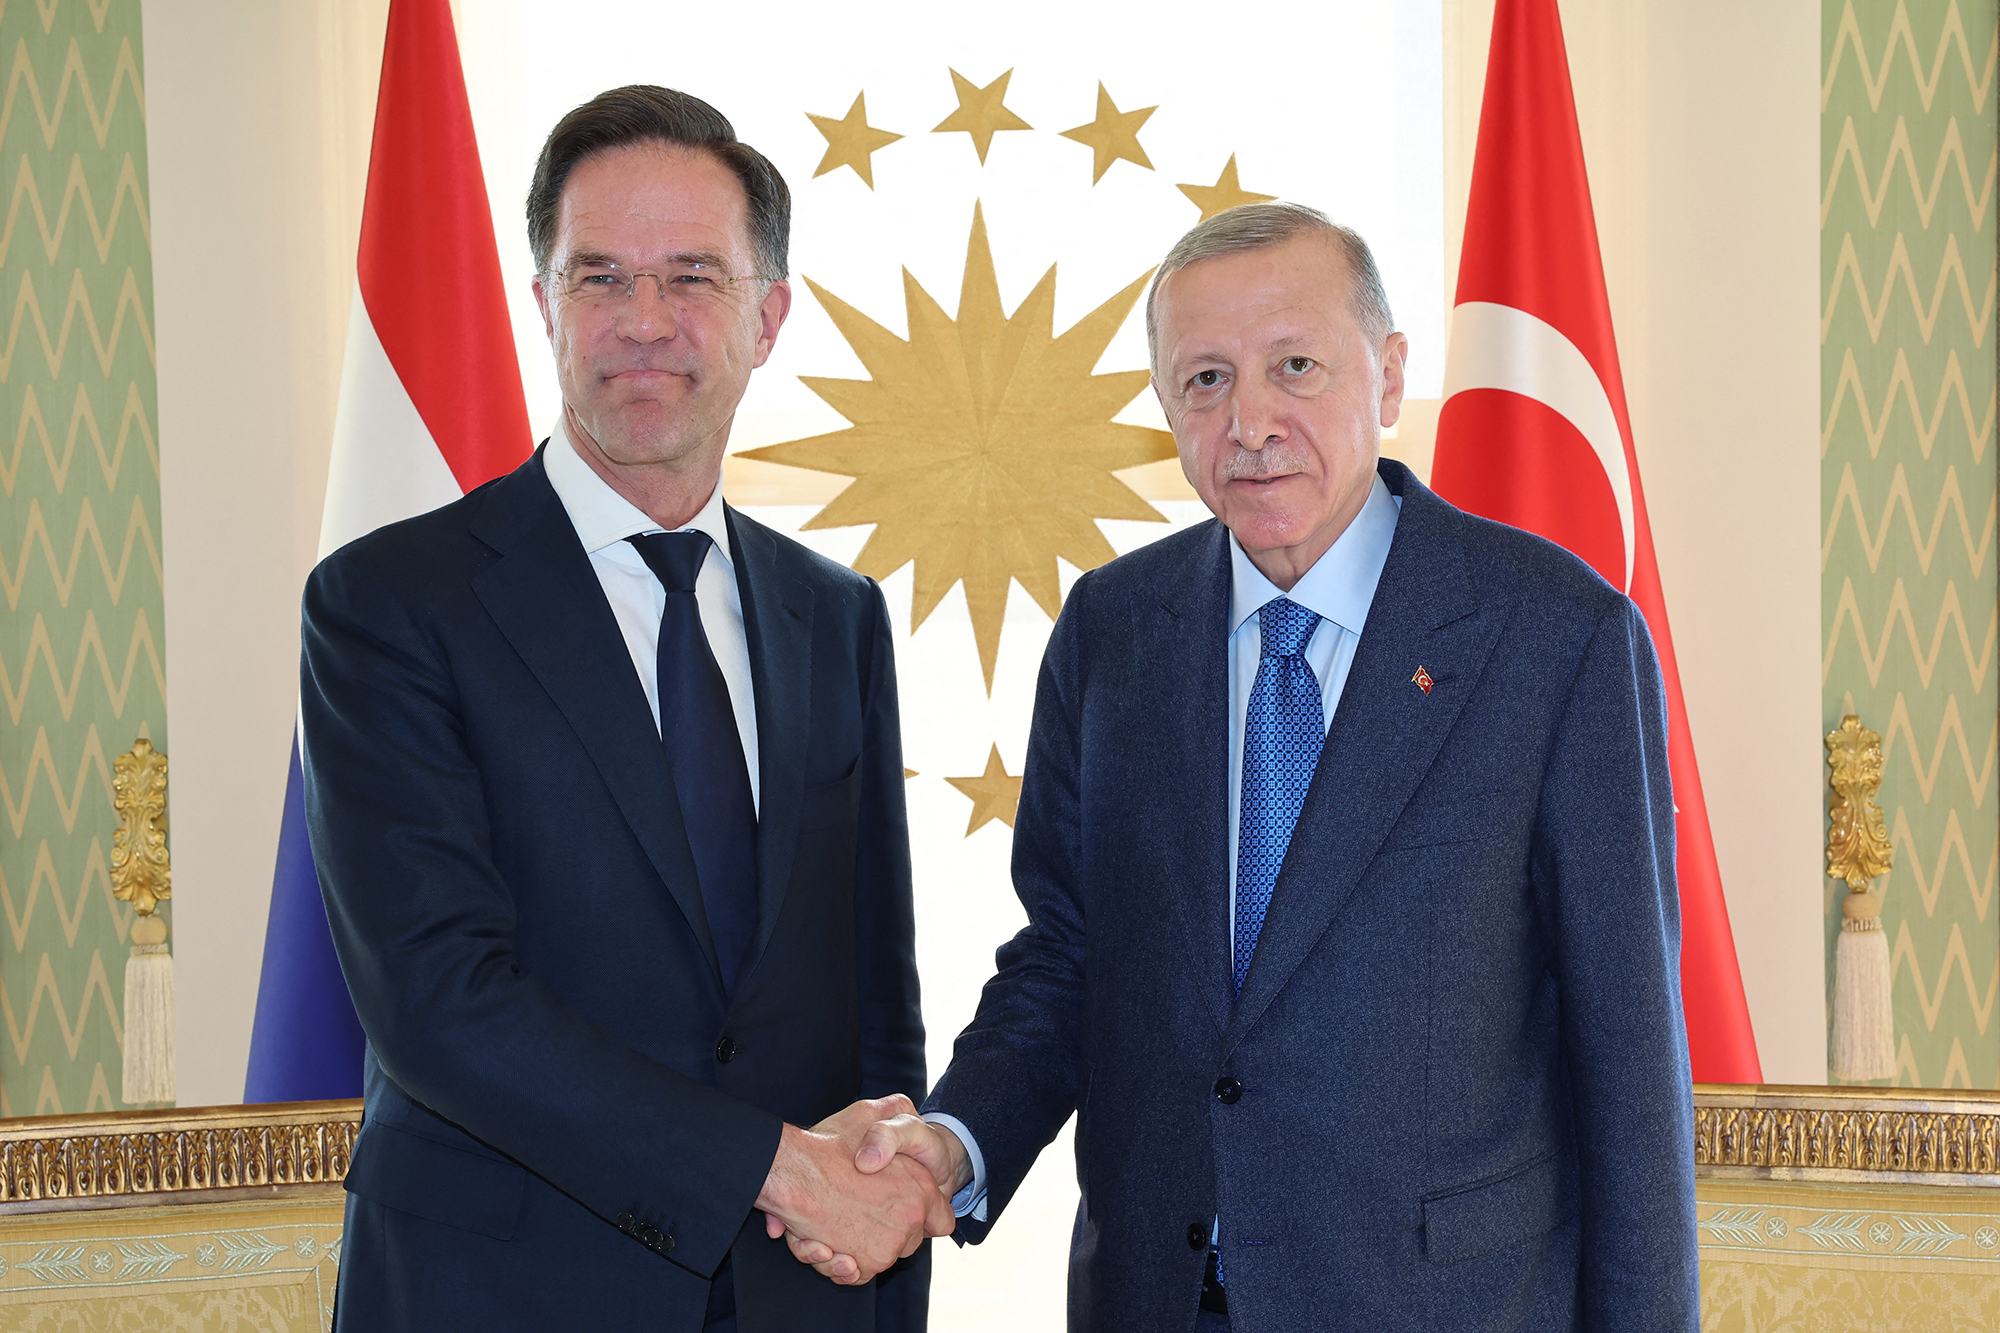 Der türkische Präsident Erdogan mit dem niederländischen Premierminister Rutte